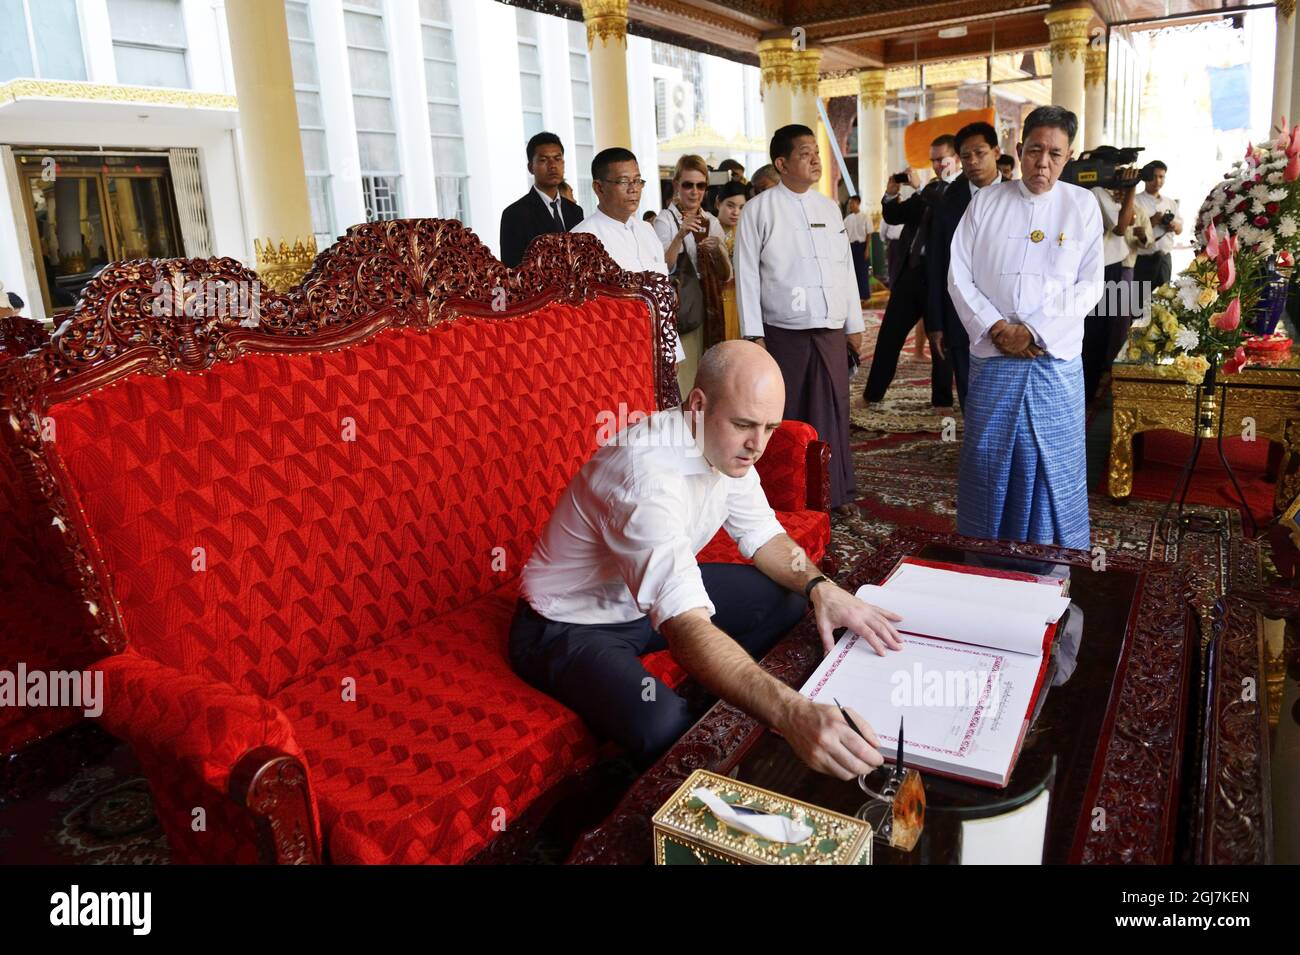 RANGOON 20121113 le Premier ministre suédois Fredrik Reinfeldt est présent lors de sa visite à la Pagode Shwedagon à Rangoon, en Birmanie, le 13 novembre 2012. Le SUÉDOIS P.M est en visite officielle en Birmanie. Foto: Henrik Montgomery / SCANPIX Kod: 10060 Banque D'Images